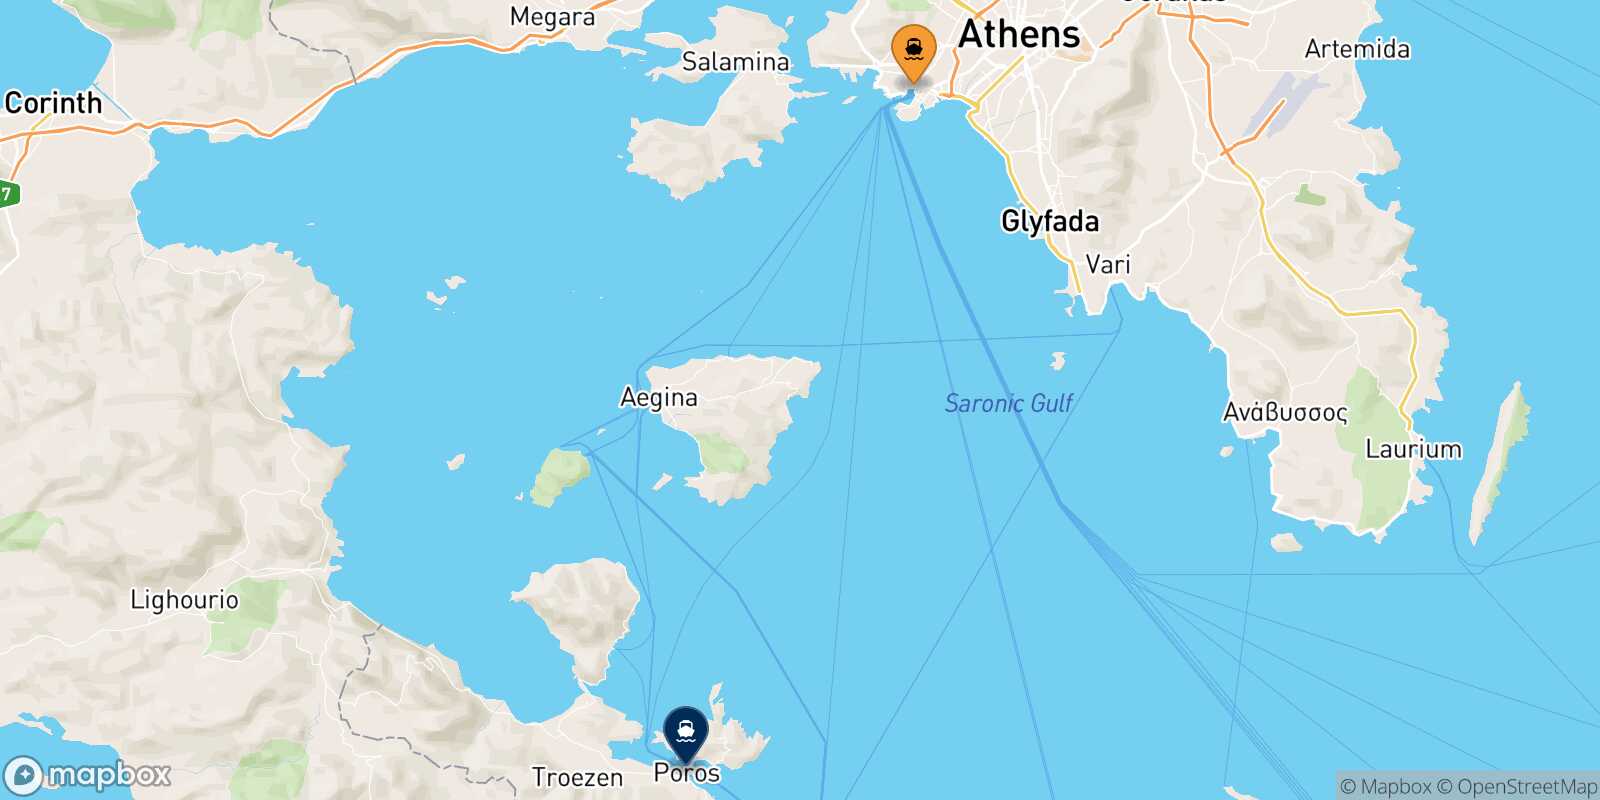 Piraeus Poros route map